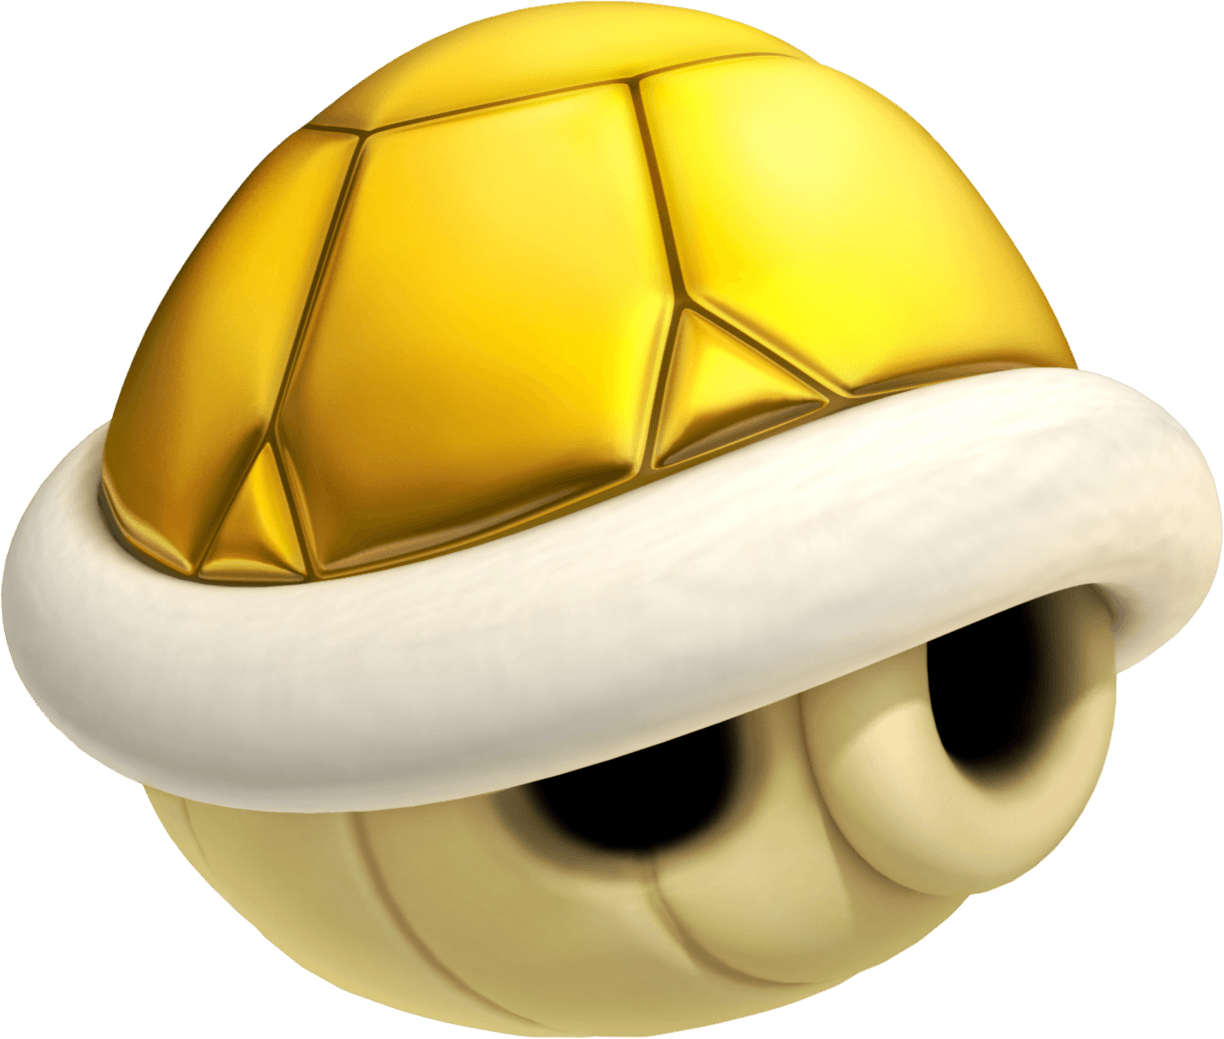 New Super Mario Bros 2 3ds Artwork Incl Enemies